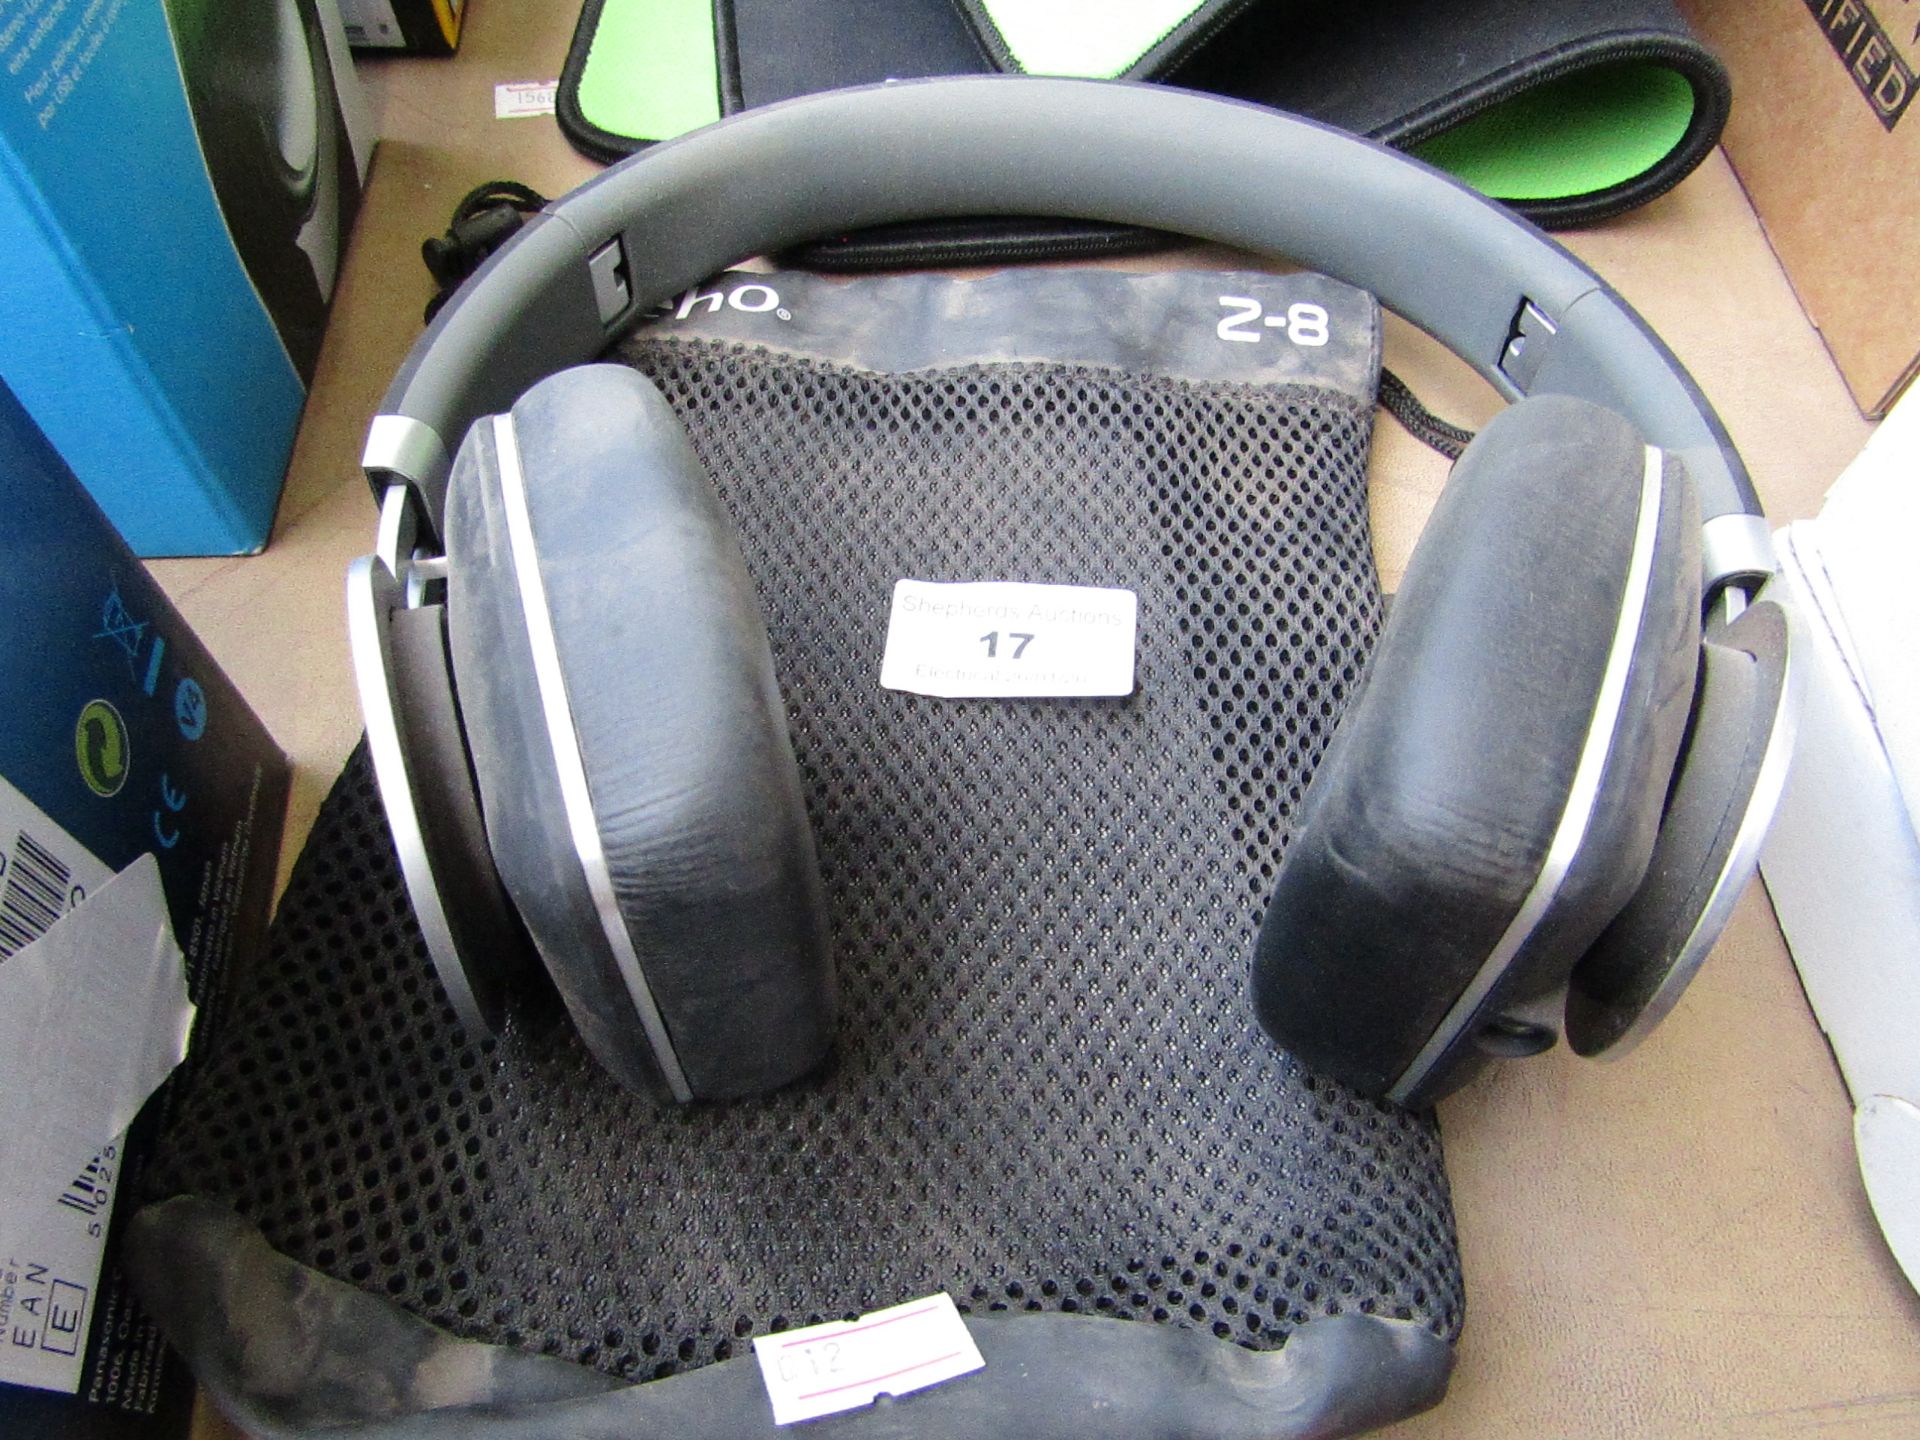 Veho Z-8 over-ear headphones, untested.